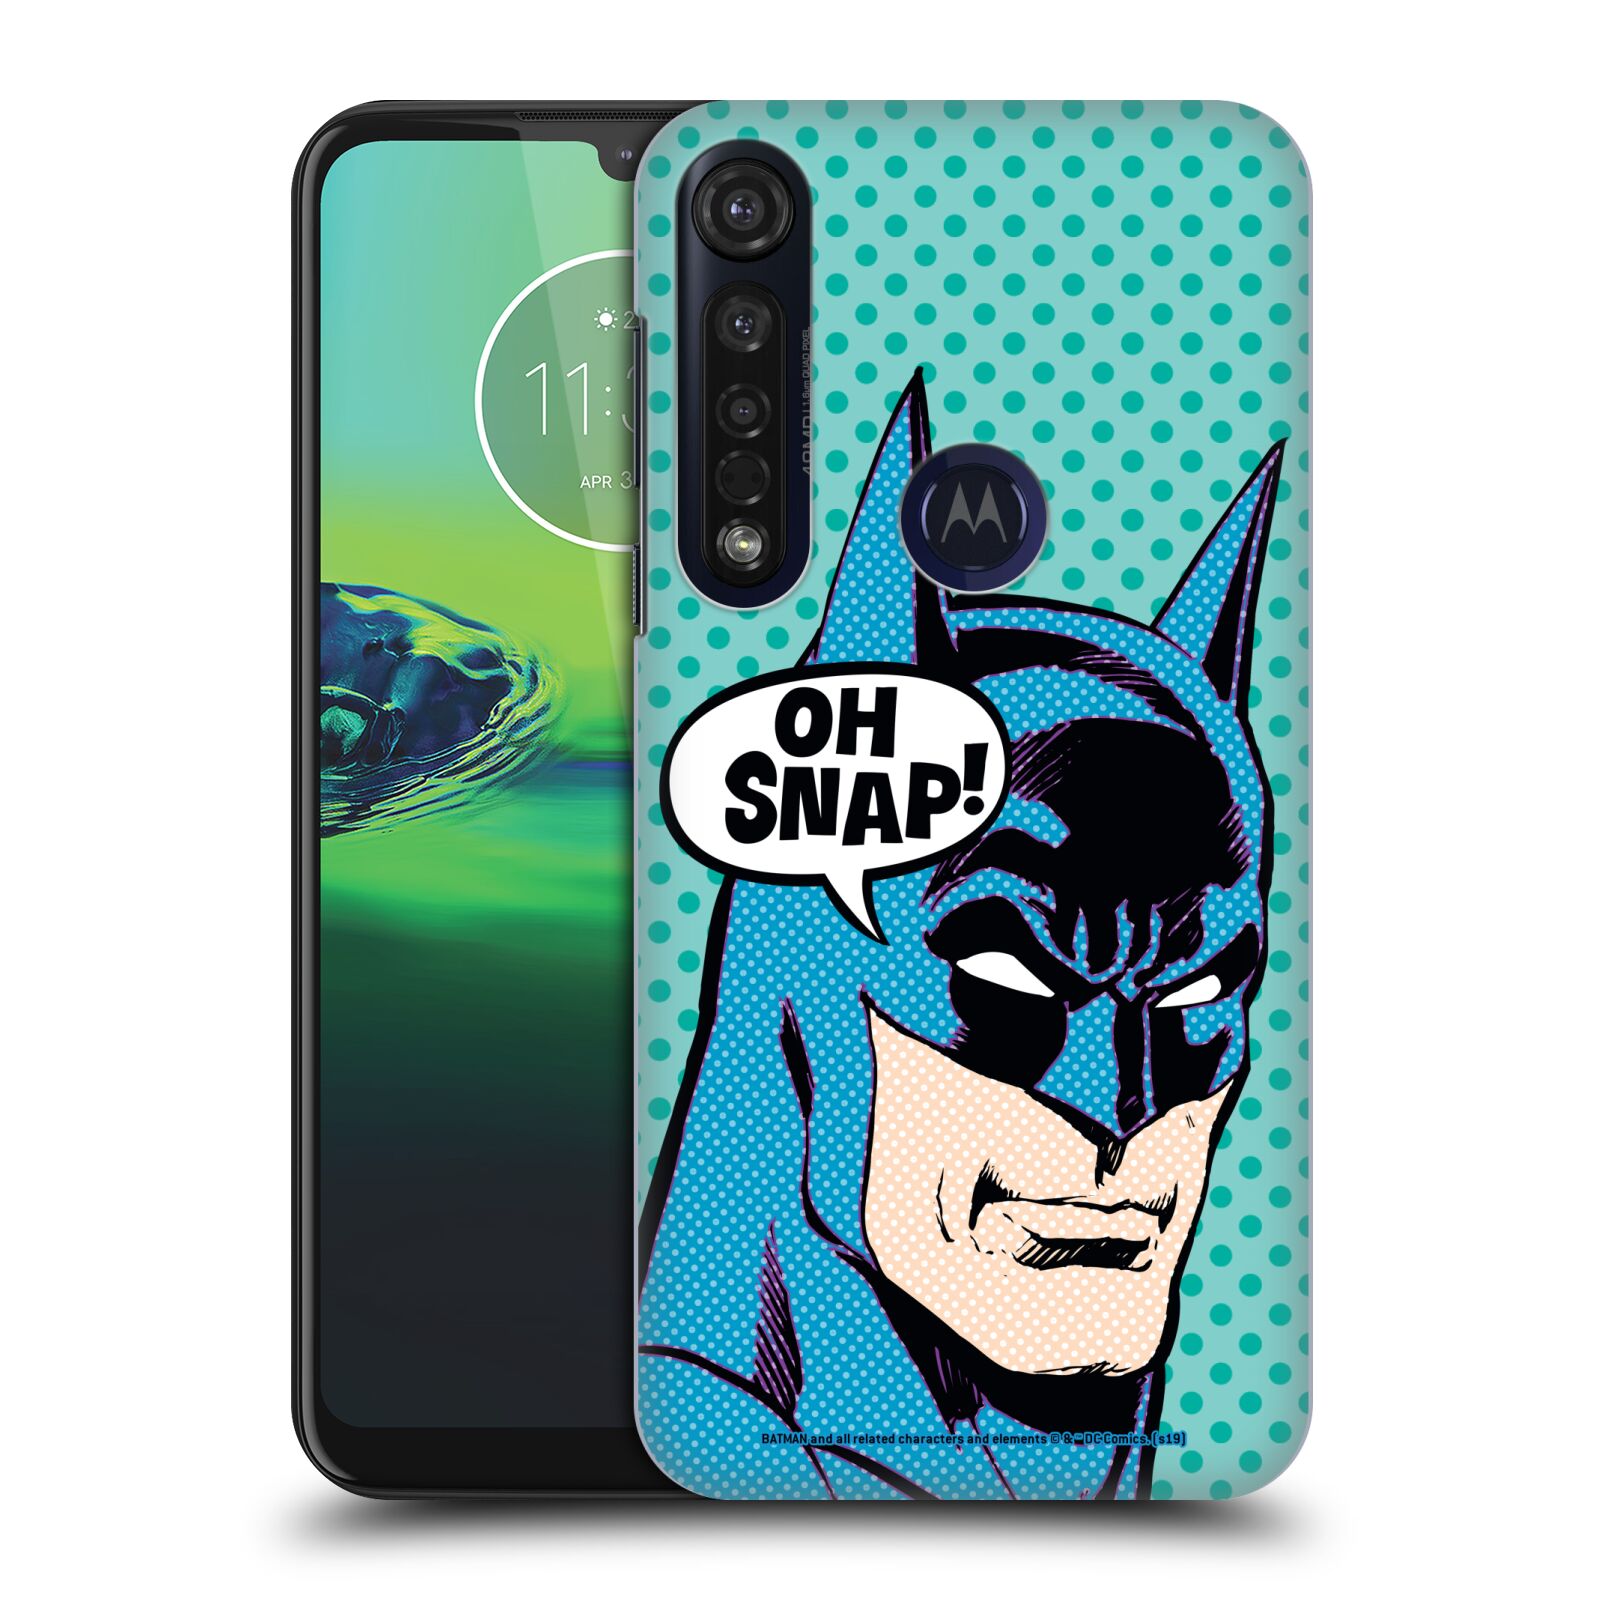 Pouzdro na mobil Motorola Moto G8 PLUS - HEAD CASE - DC komix Batman tvář Pop Art